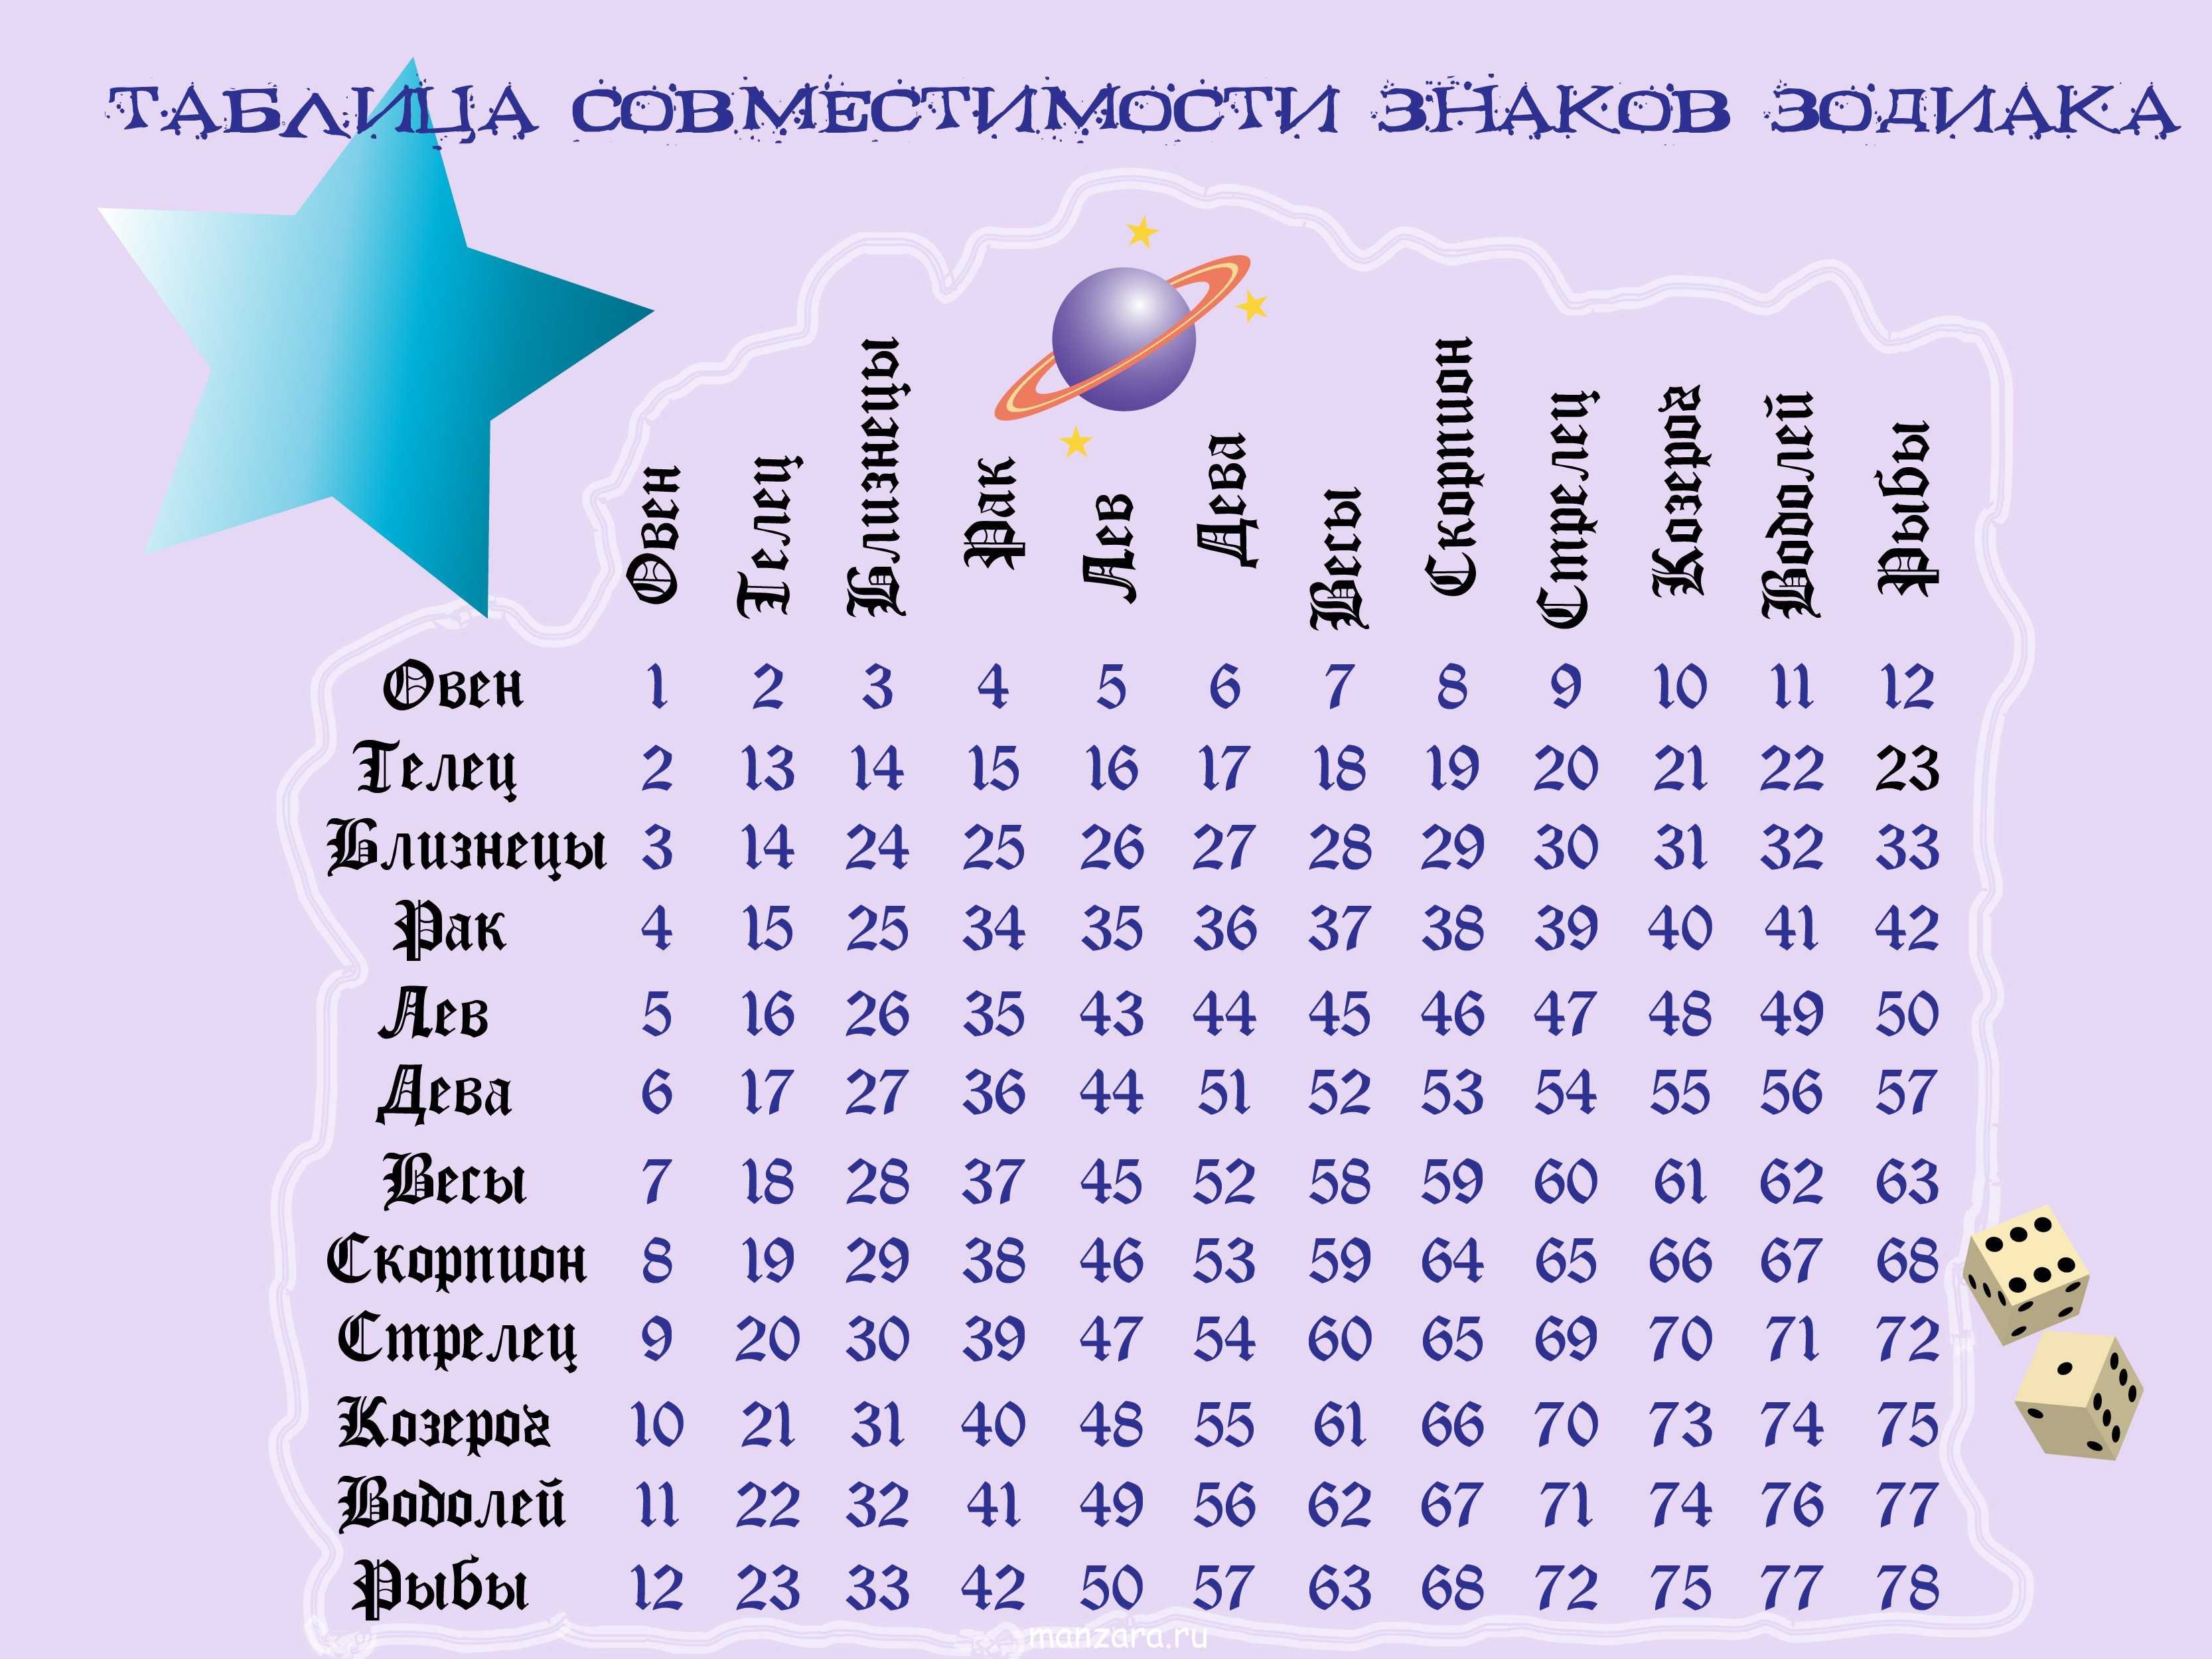 12 июля гороскоп. Совместимость знаков зодиака. Таблица совместимости знаков зодиака. Совместимость знаков Зд. Гороскоп на совместимость знаков.